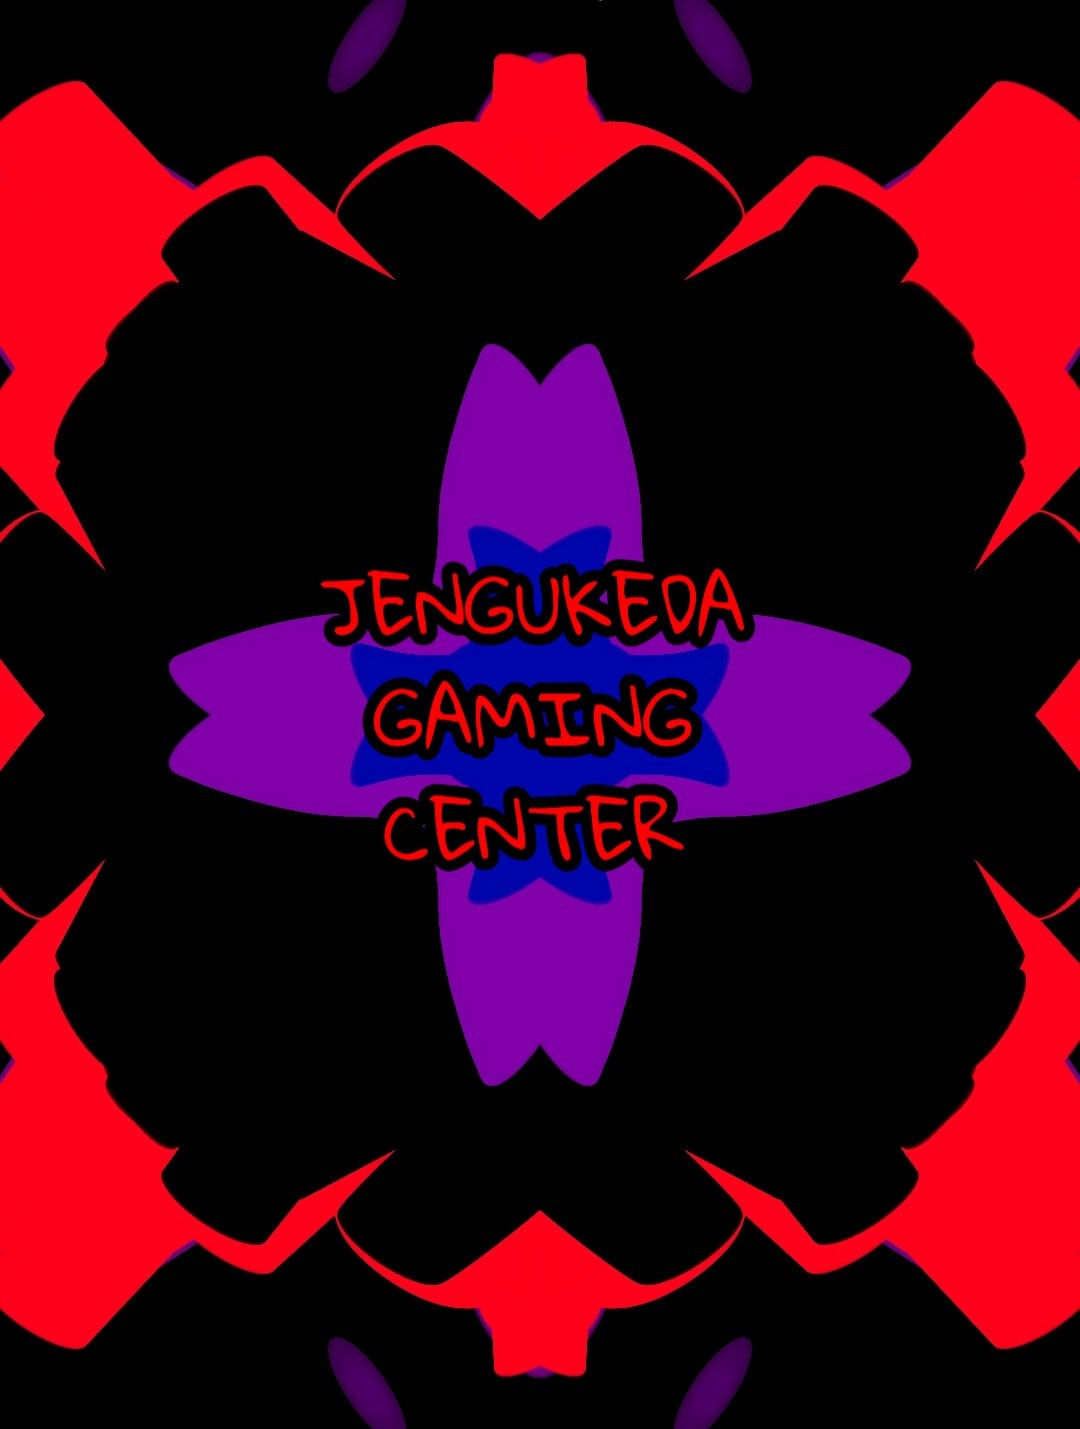 Jengukeda Gaming Center